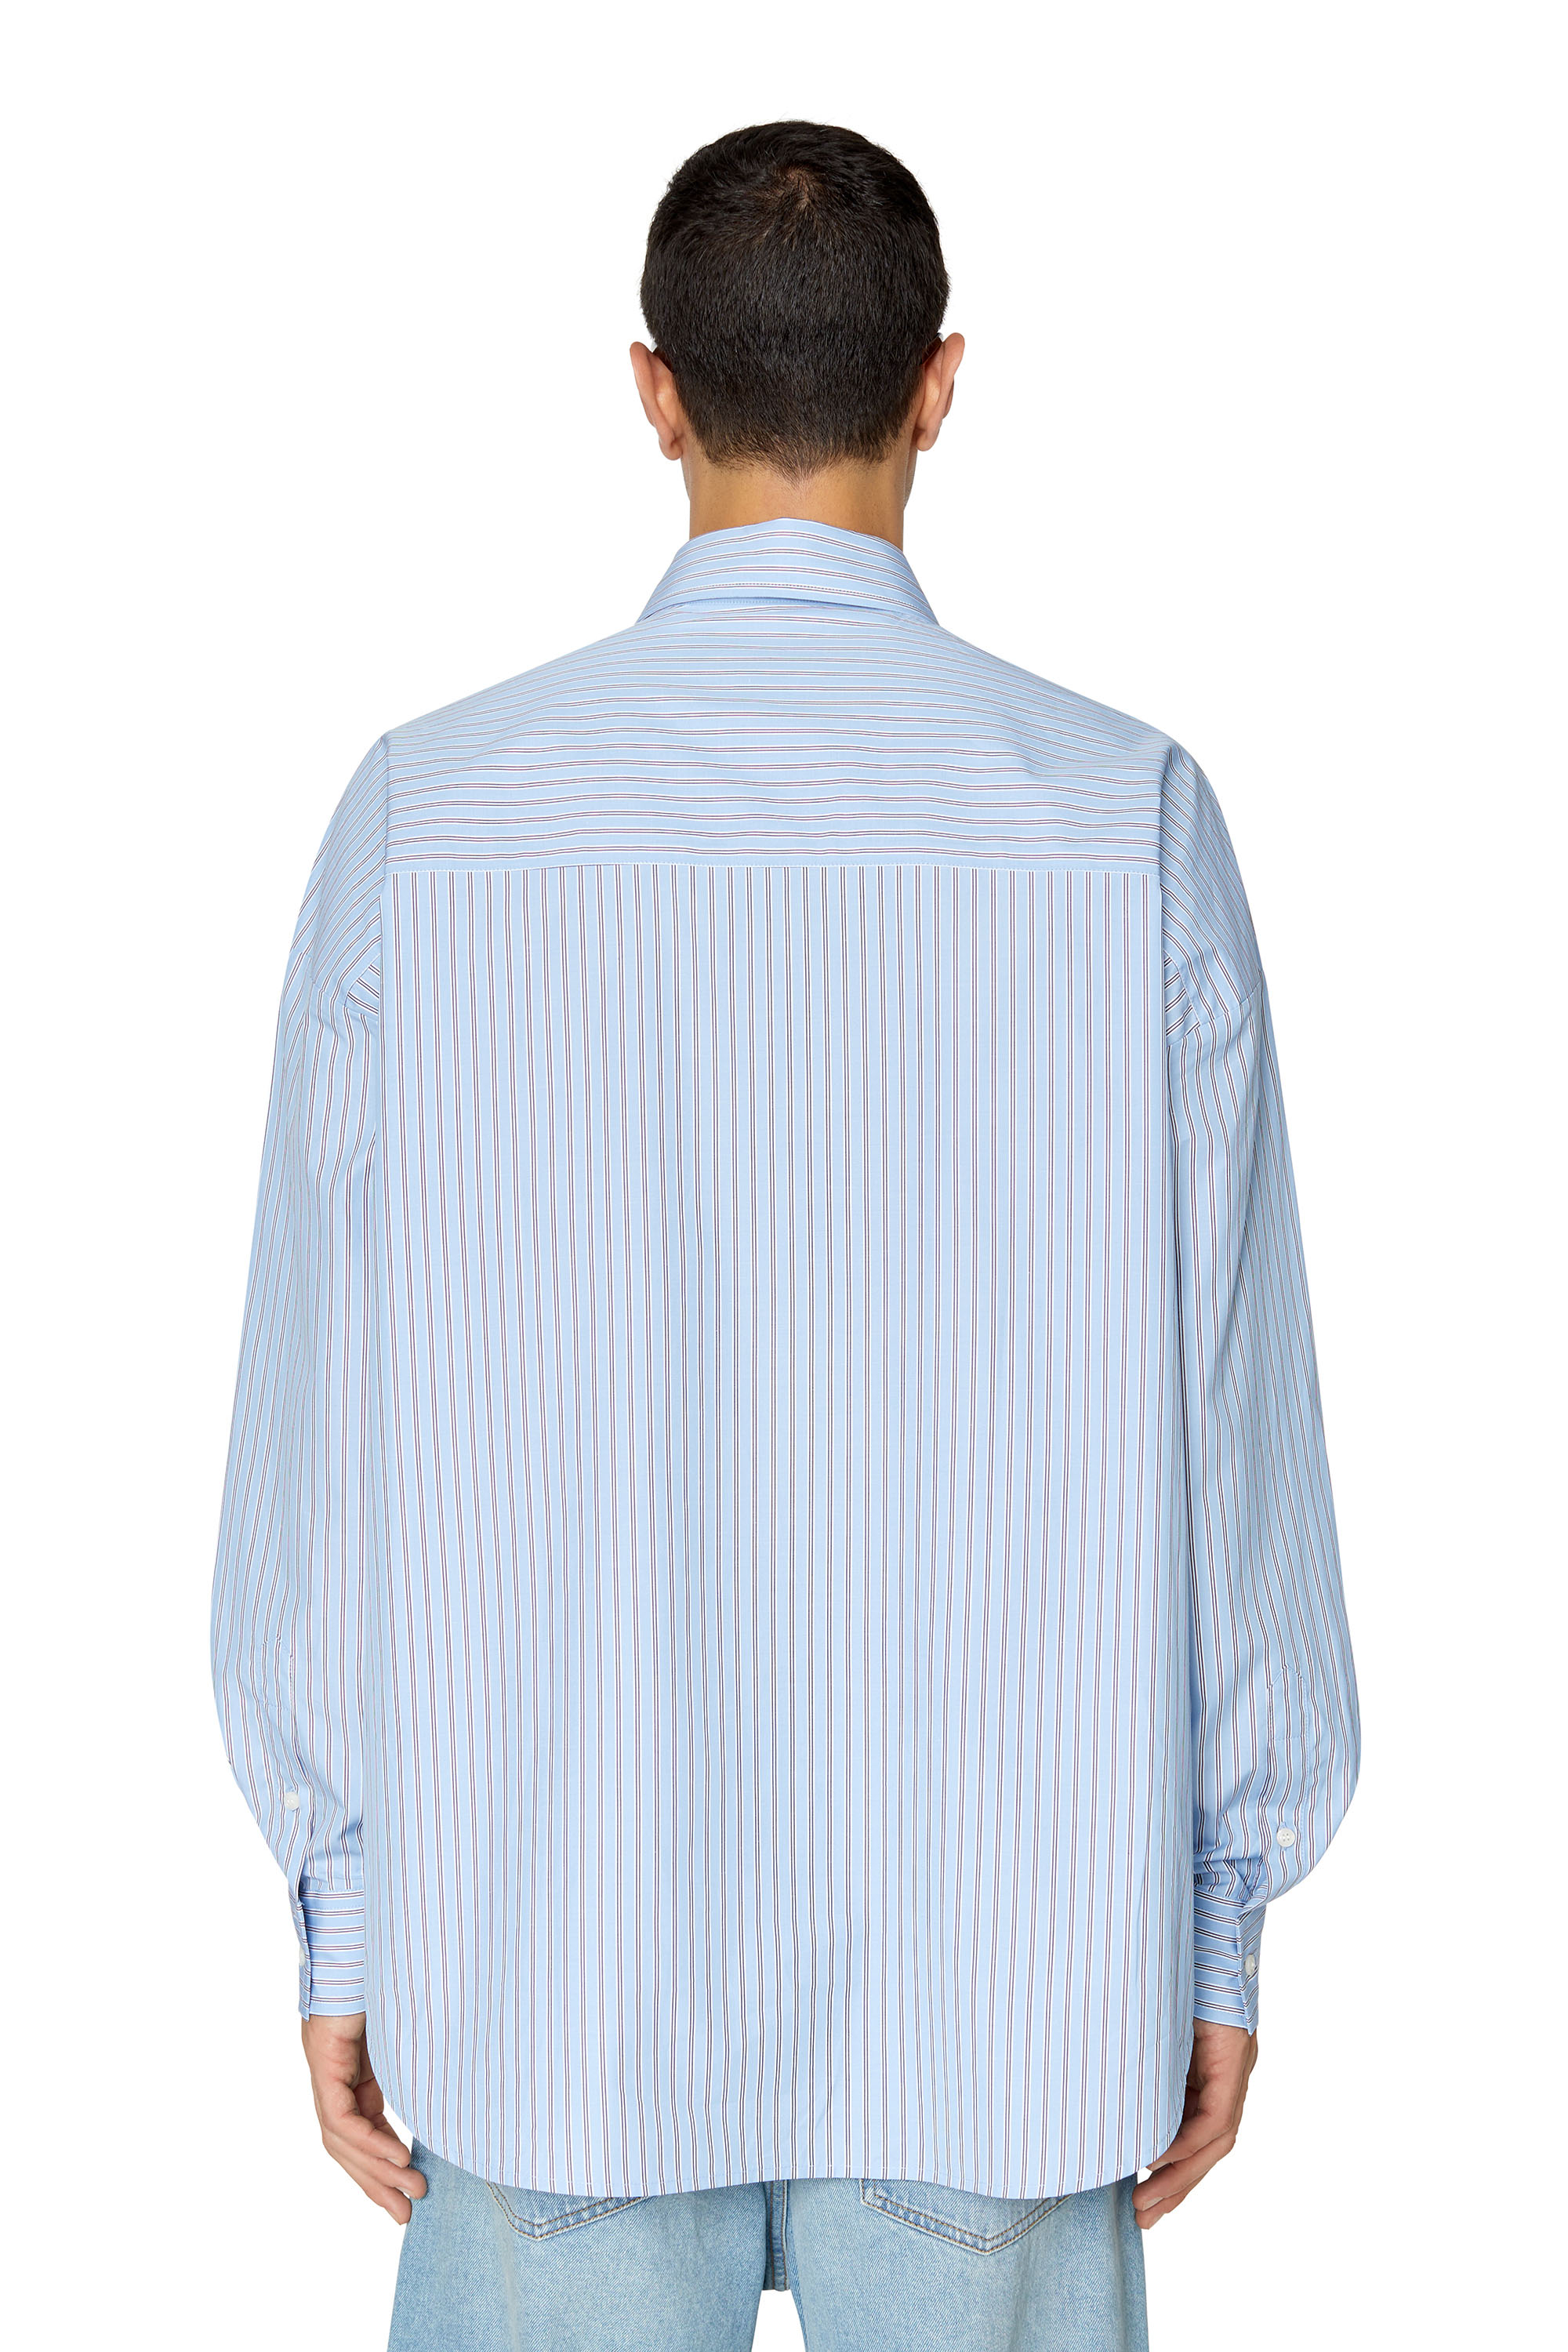 正規品は公式通販で DIESEL FW22 新作 デニムシャツ シャツ